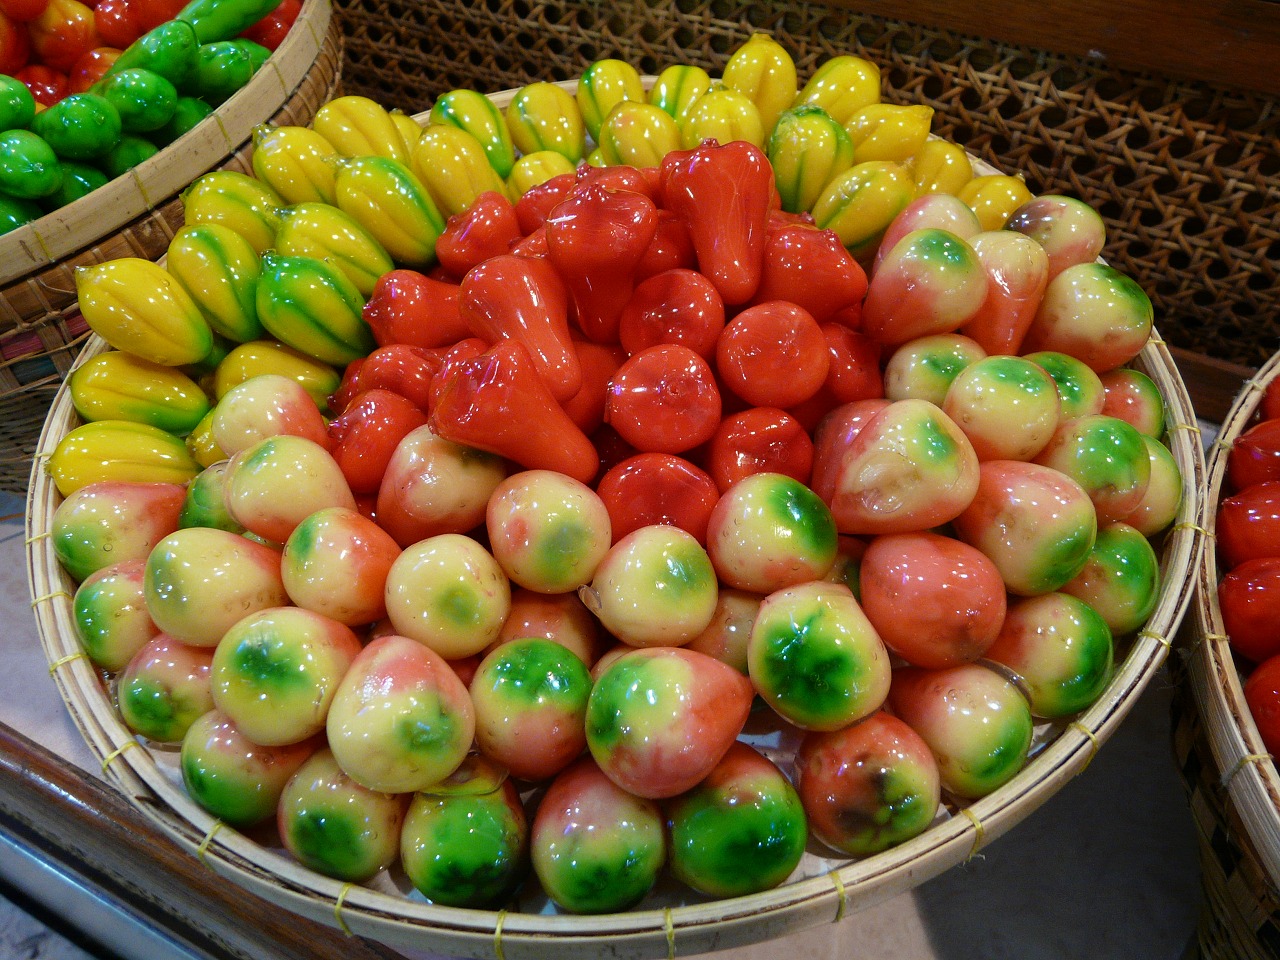 ルークチュップ Luk Chup。表現されているのは、ローズアップル、マンゴー、ゴーヤなど、タイ人が日常で使う食材。デパートなどの伝統菓子コーナーで購入できる。